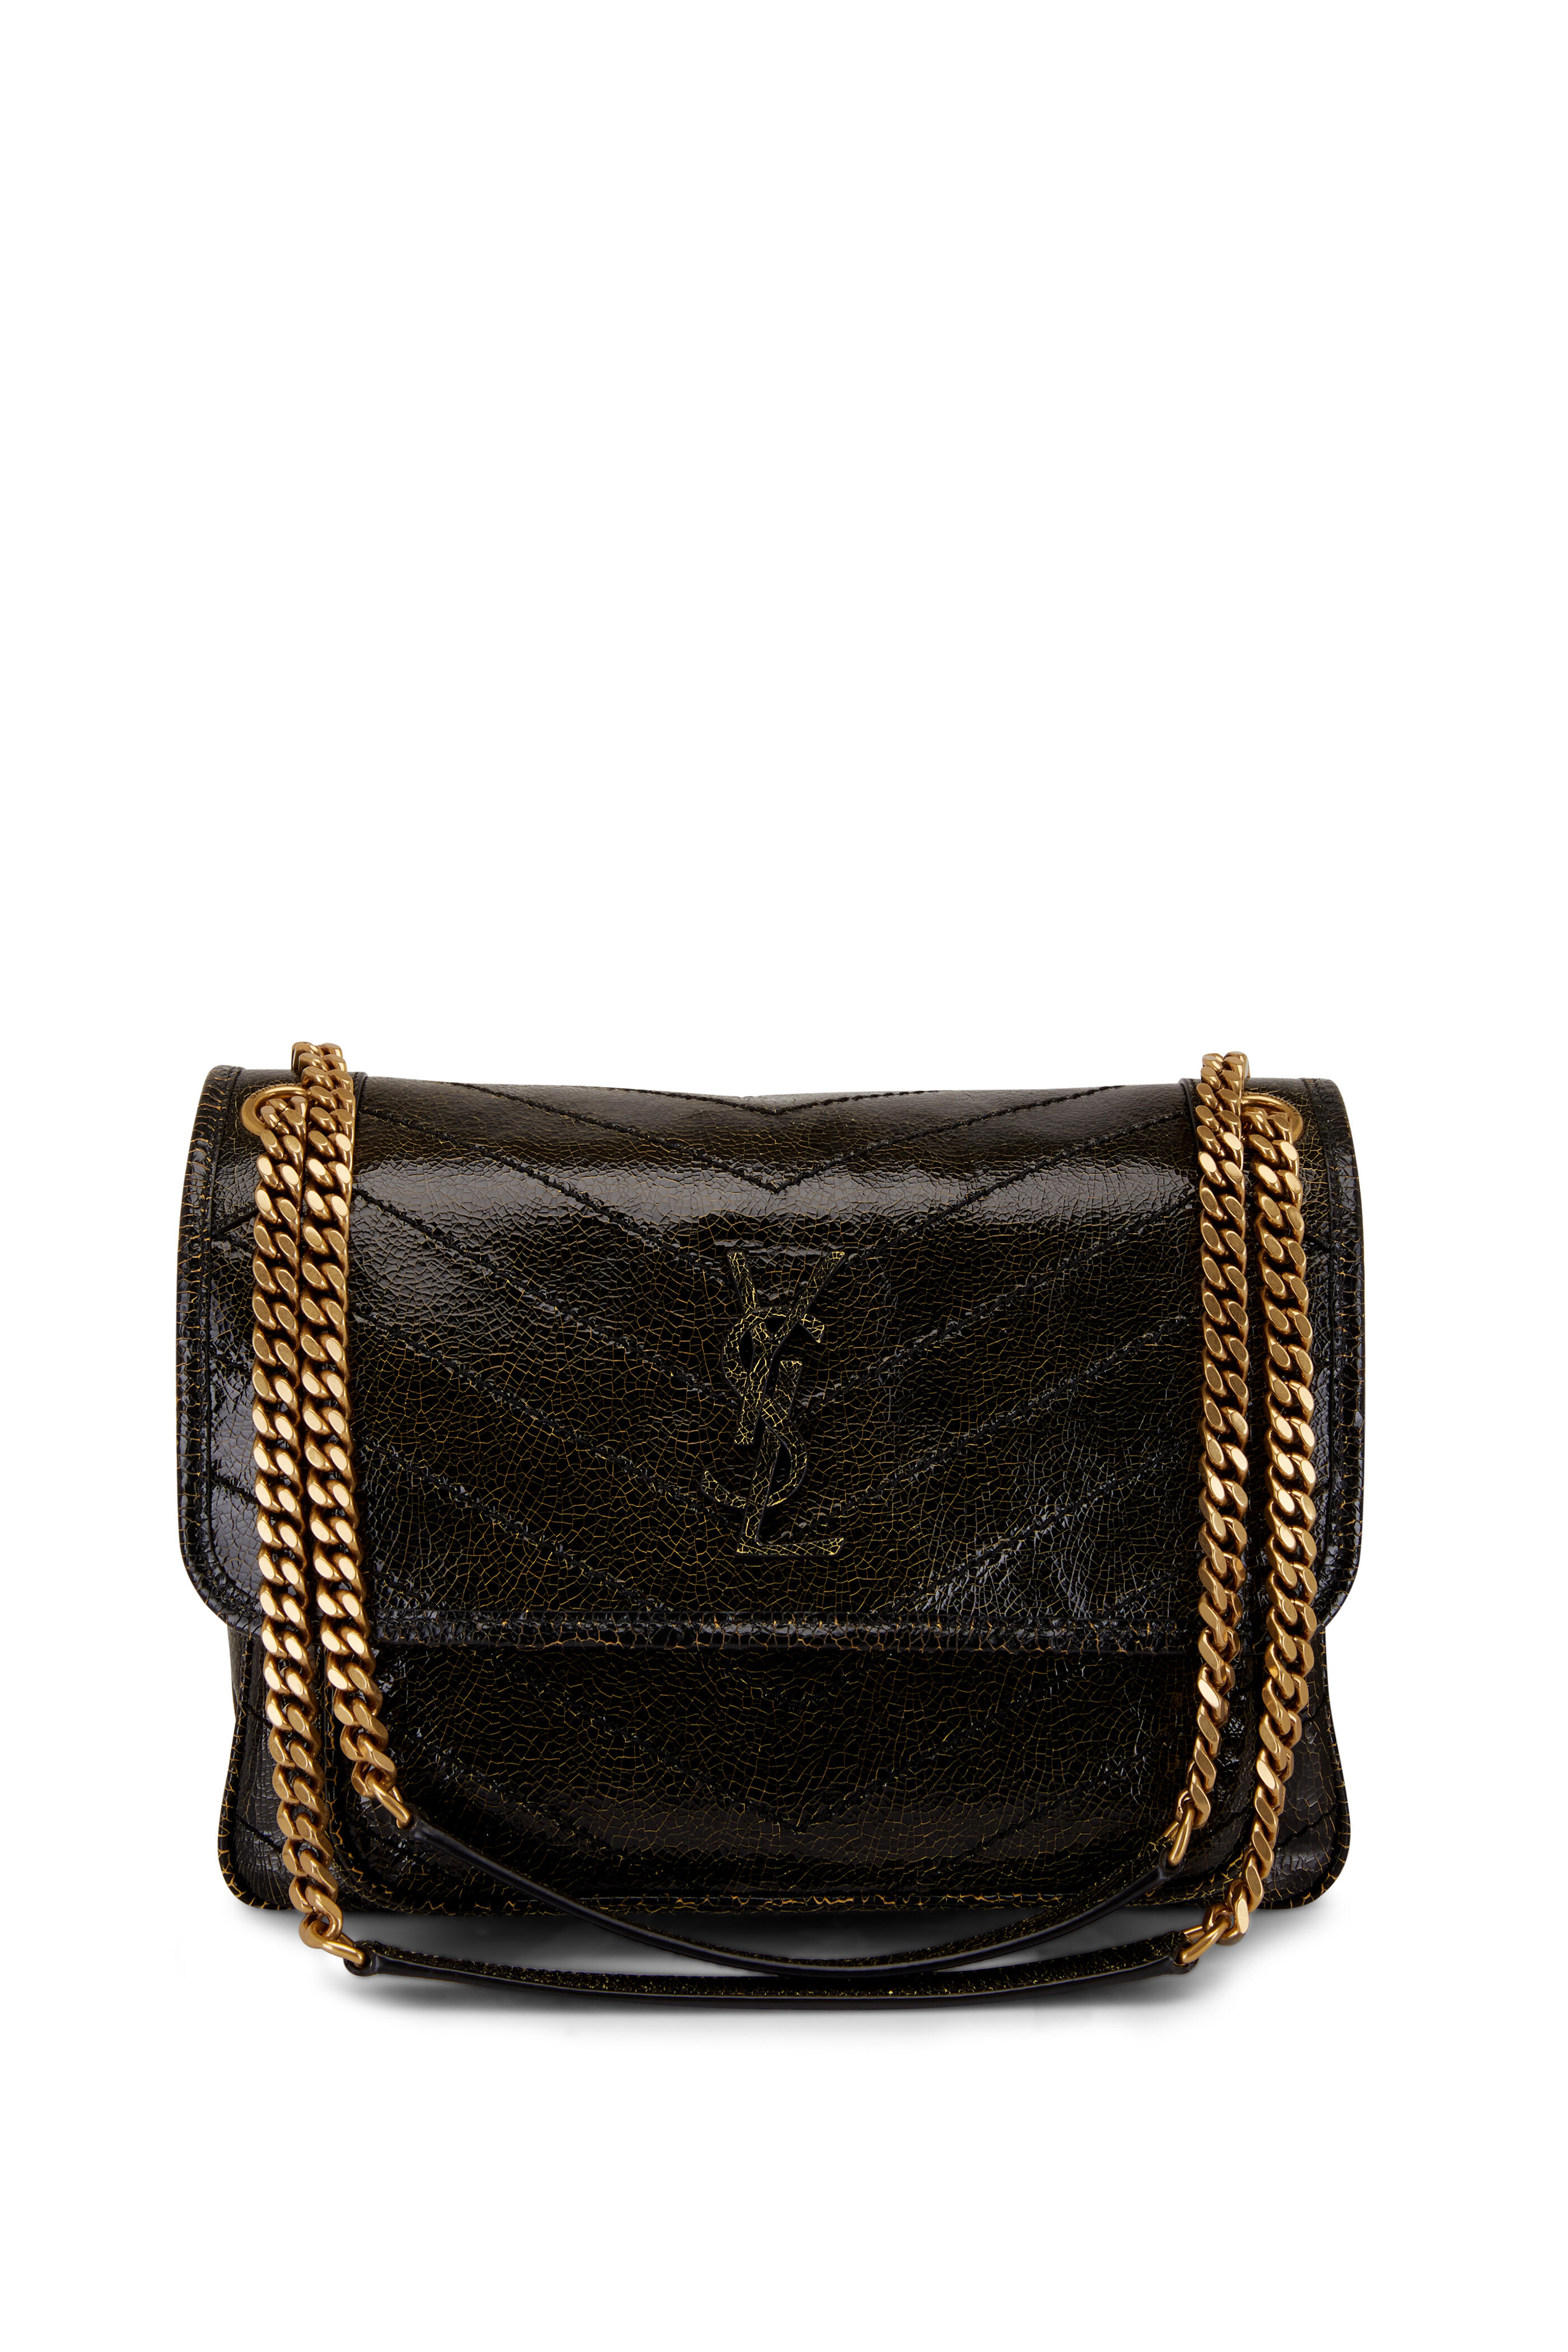 Yves Saint Laurent Embossed Leather Wallet on Chain Shoulder Bag Black